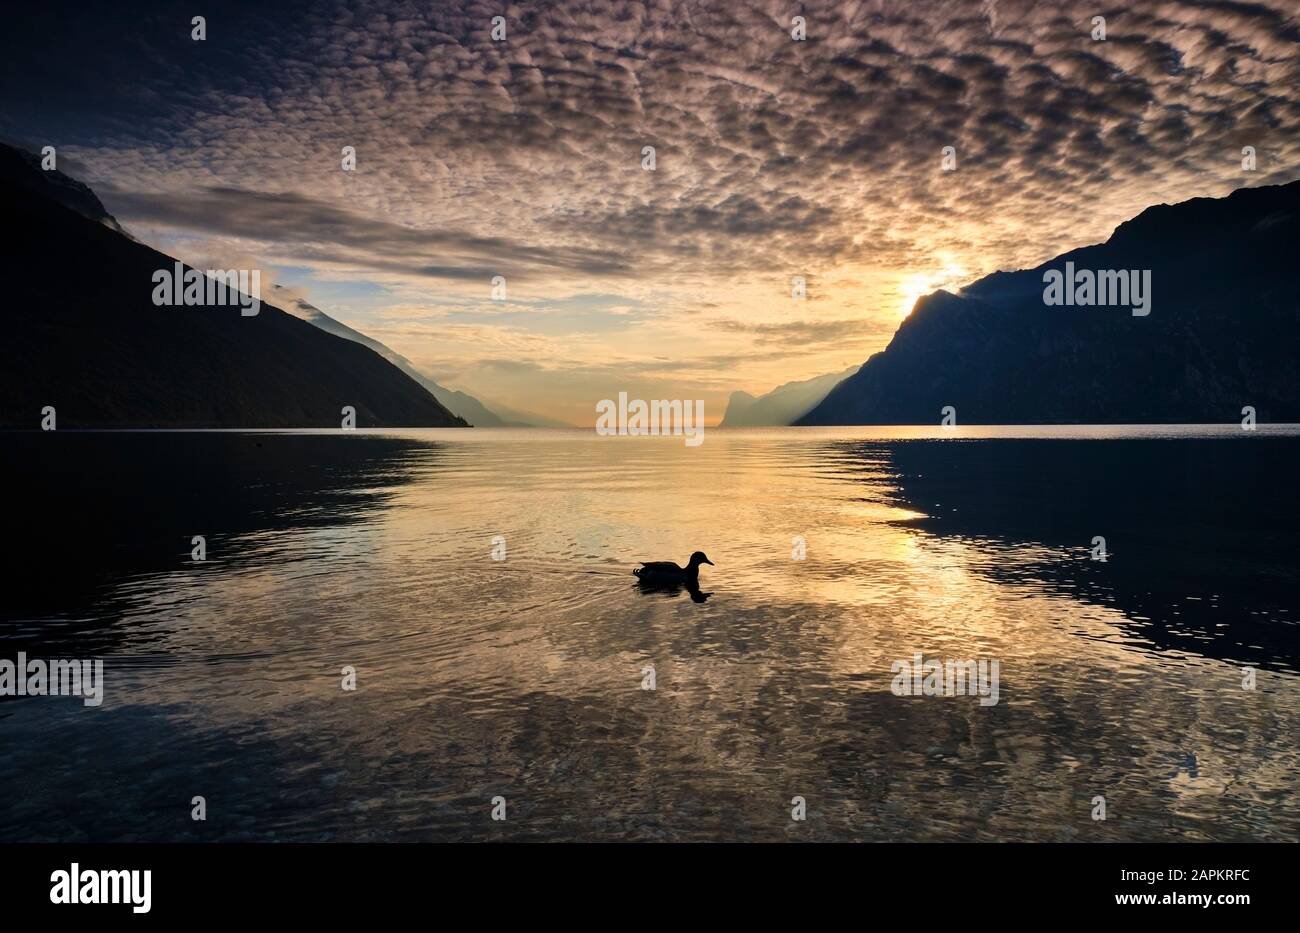 Italy, Trentino, Nago-Torbole, Silhouette of bird swimming in Lake Garda at sunset Stock Photo